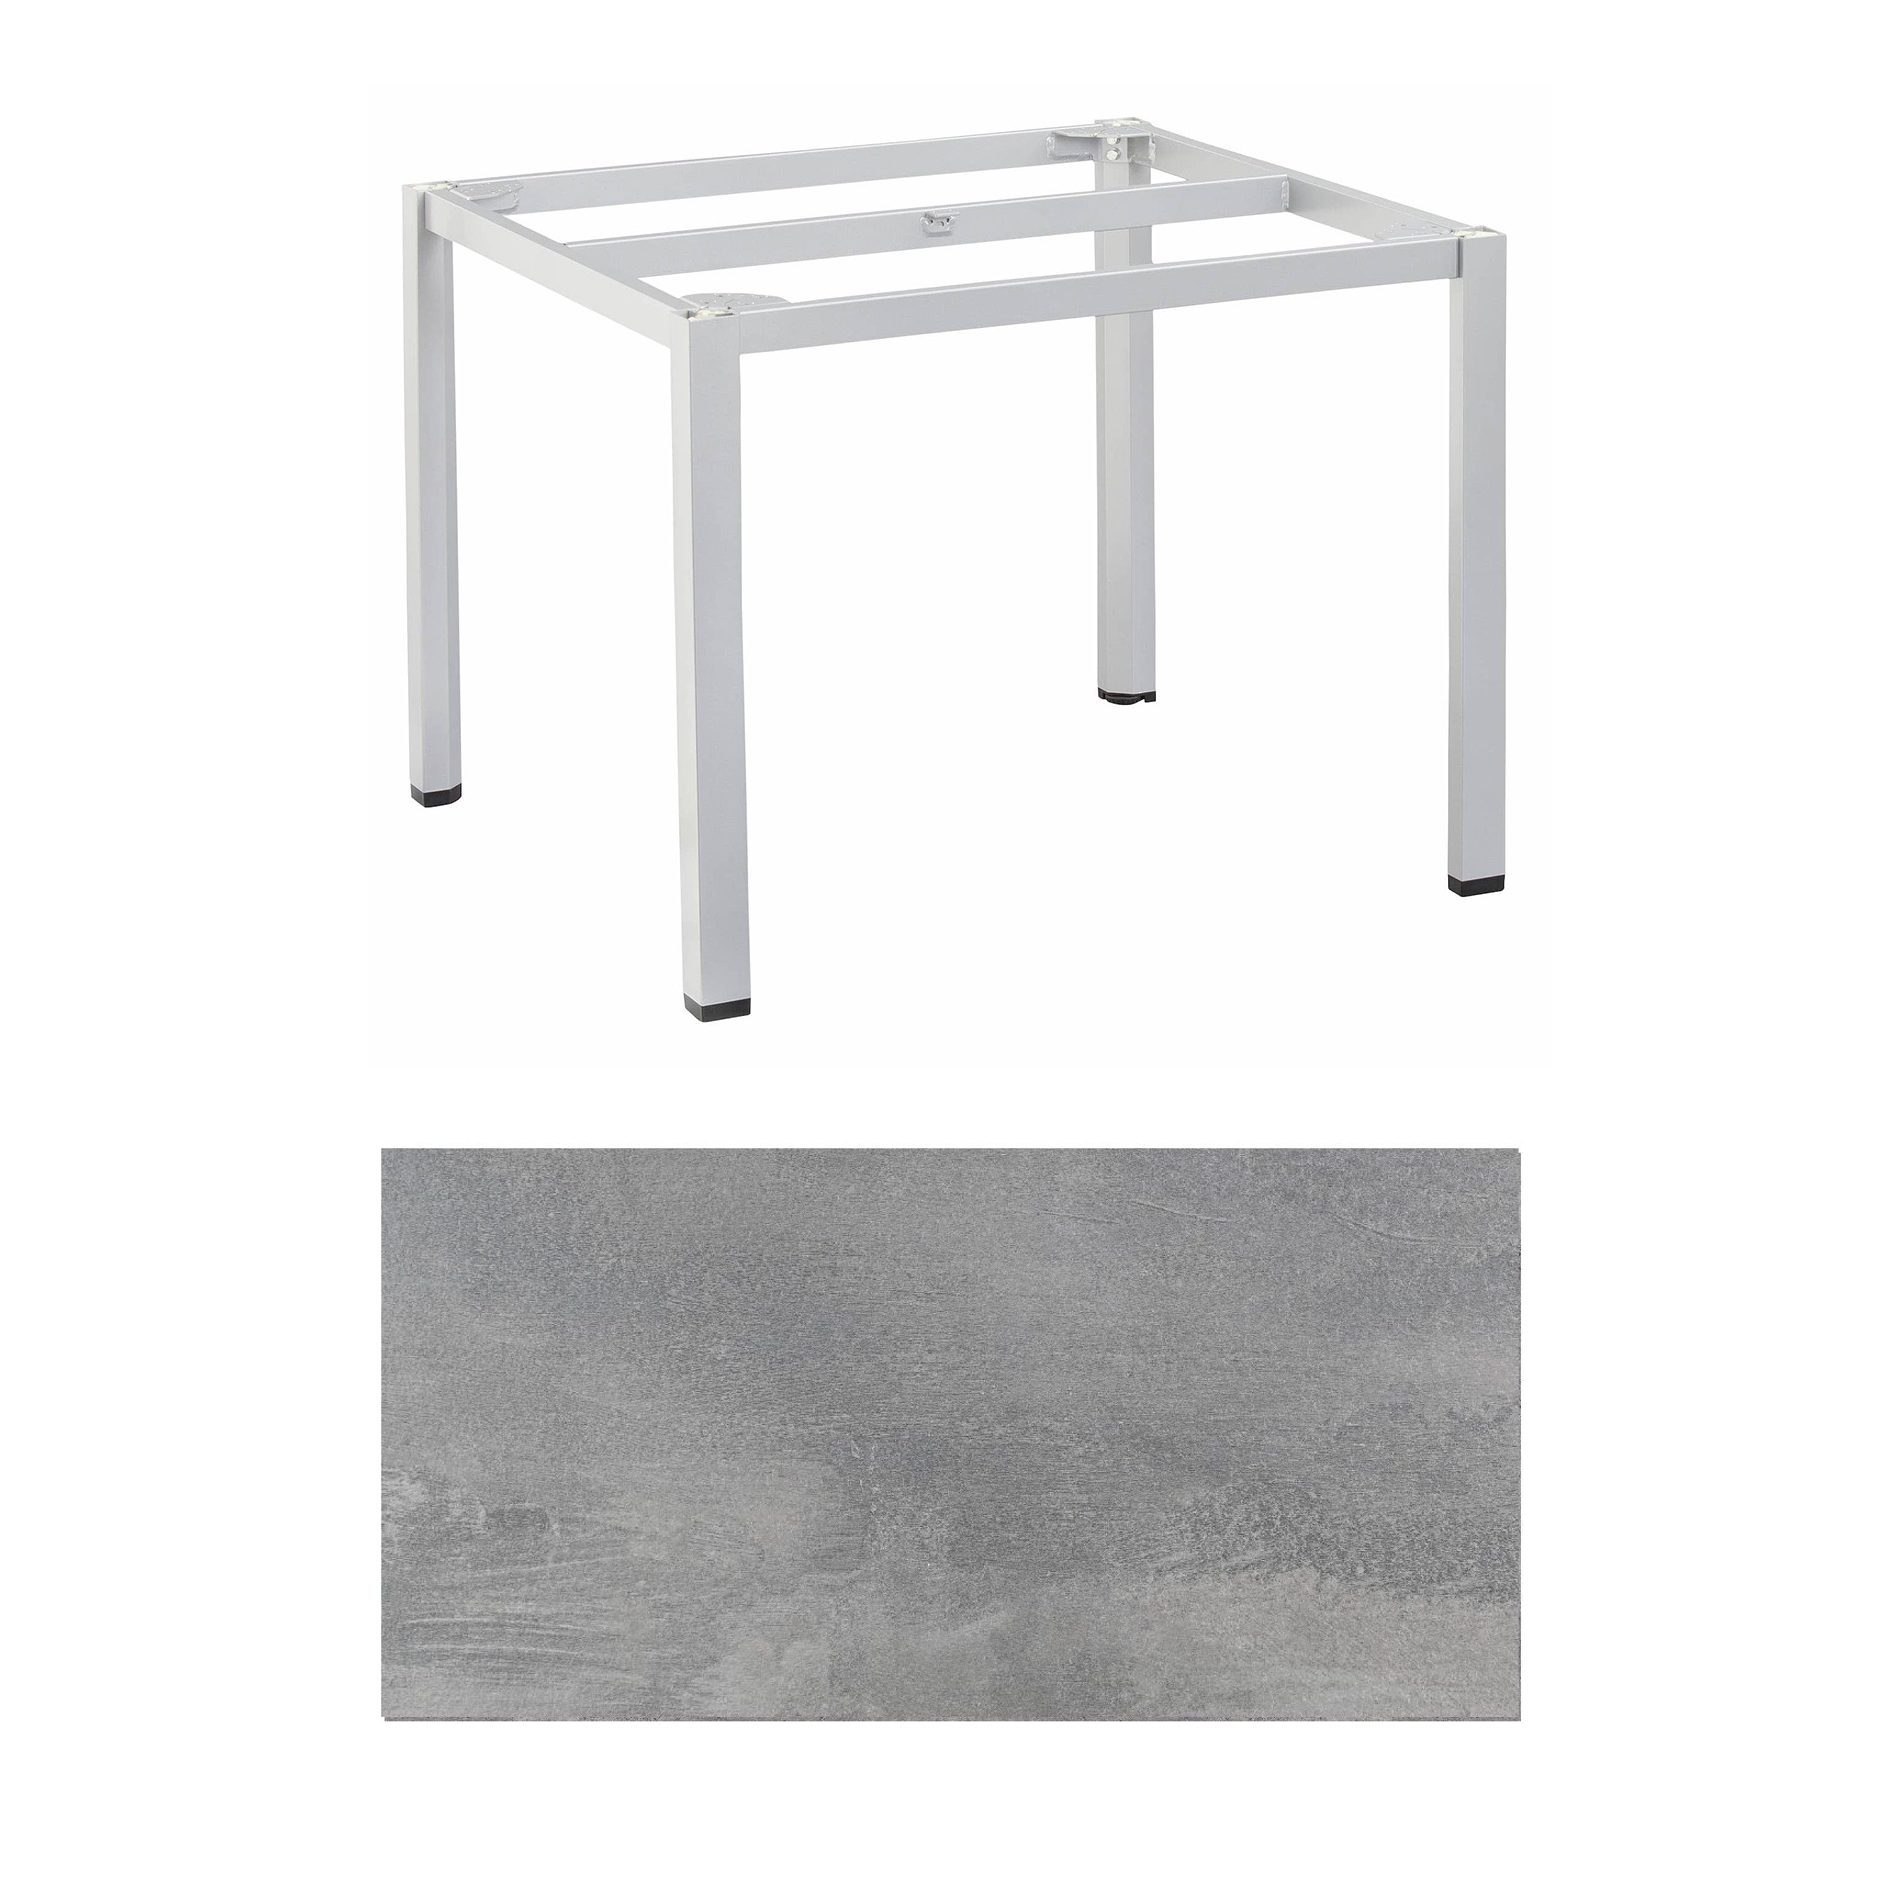 Kettler "Cubic" Tischgestell 95x95 cm, Aluminium silber mit HPL-Platte silber-grau